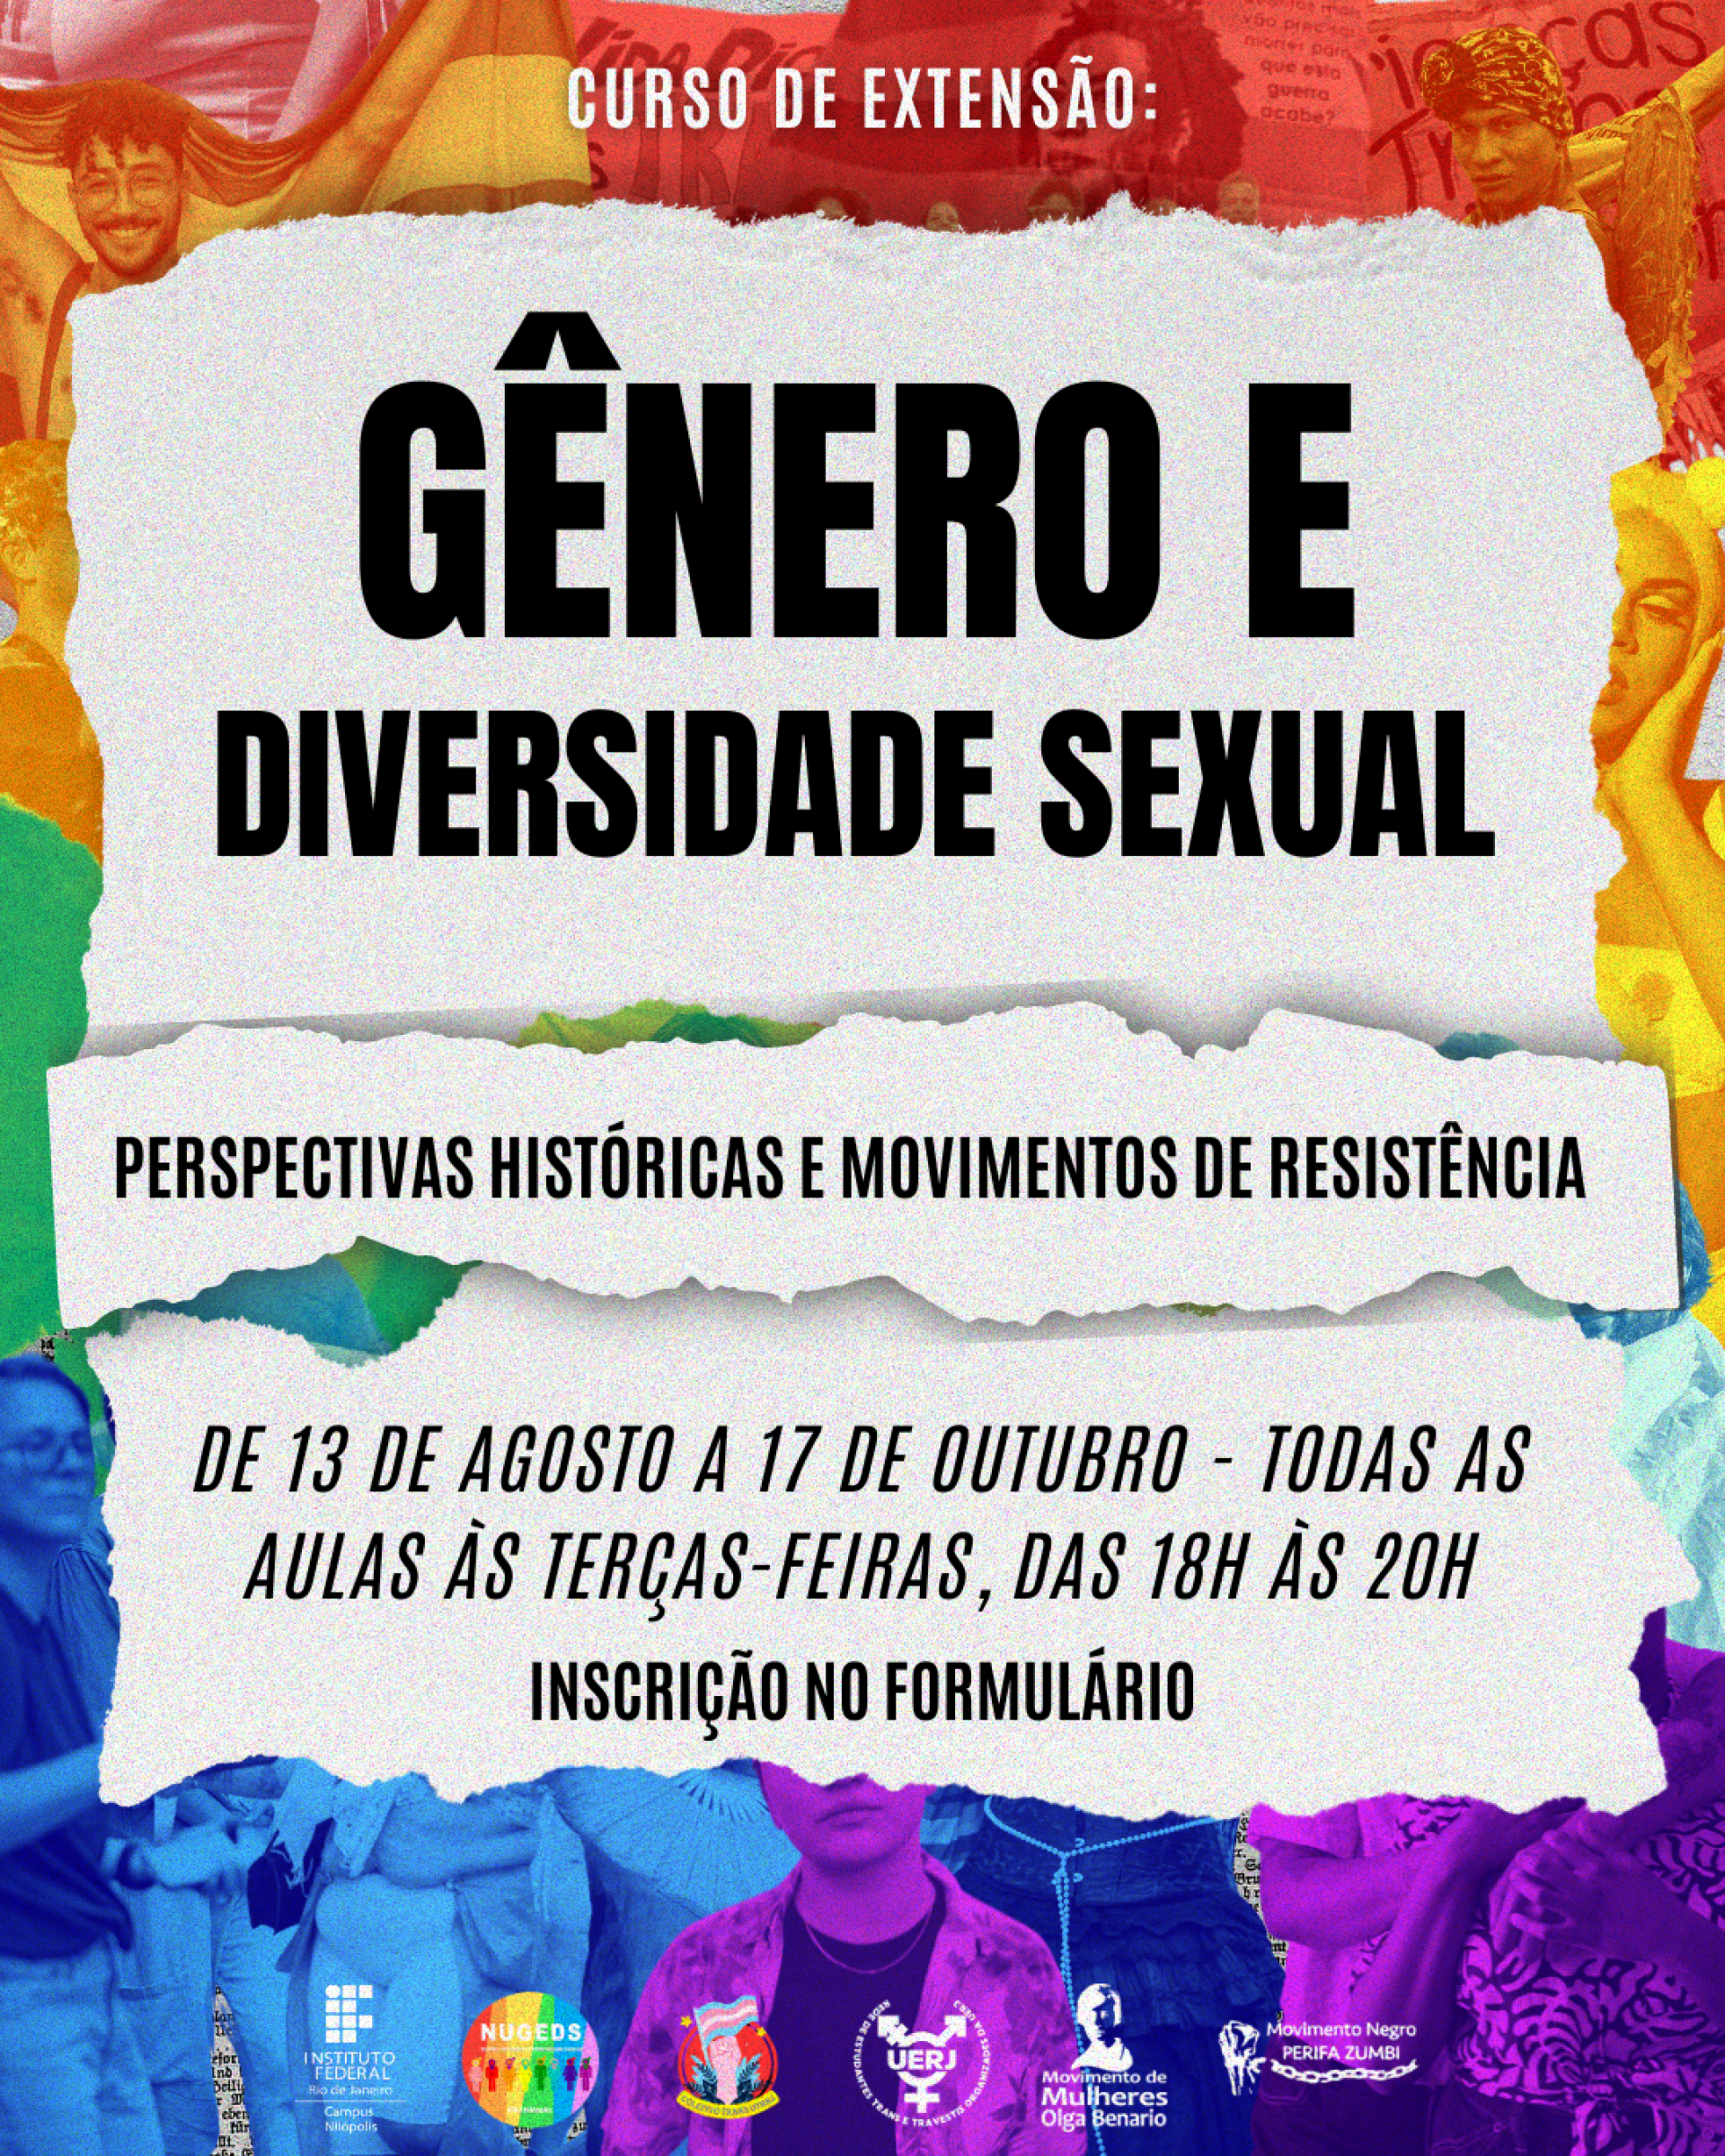 Curso de Extensão Online: Gênero e Diversidade Sexual Sexual: Perspectivas Históricas e Movimentos de Resistência - Divulgação / IFRJ Nilópolis